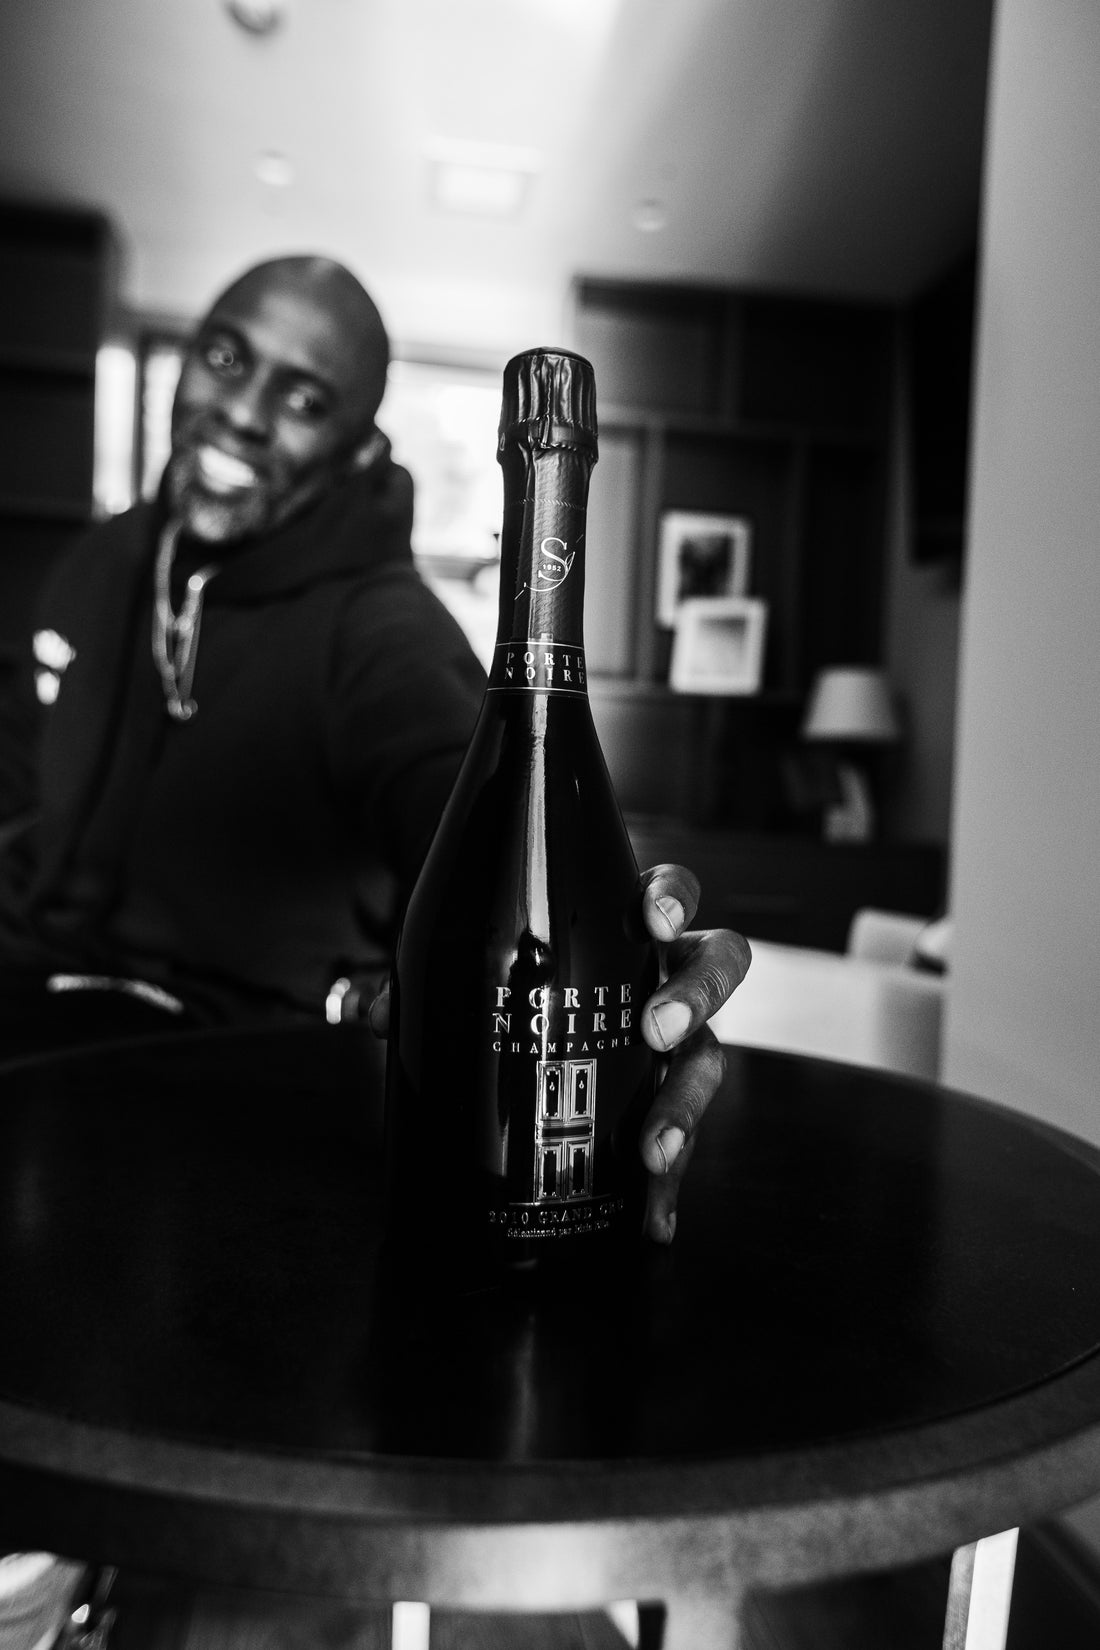 Idris Elba's Porte Noire Champagne Wine tasting with David Farber